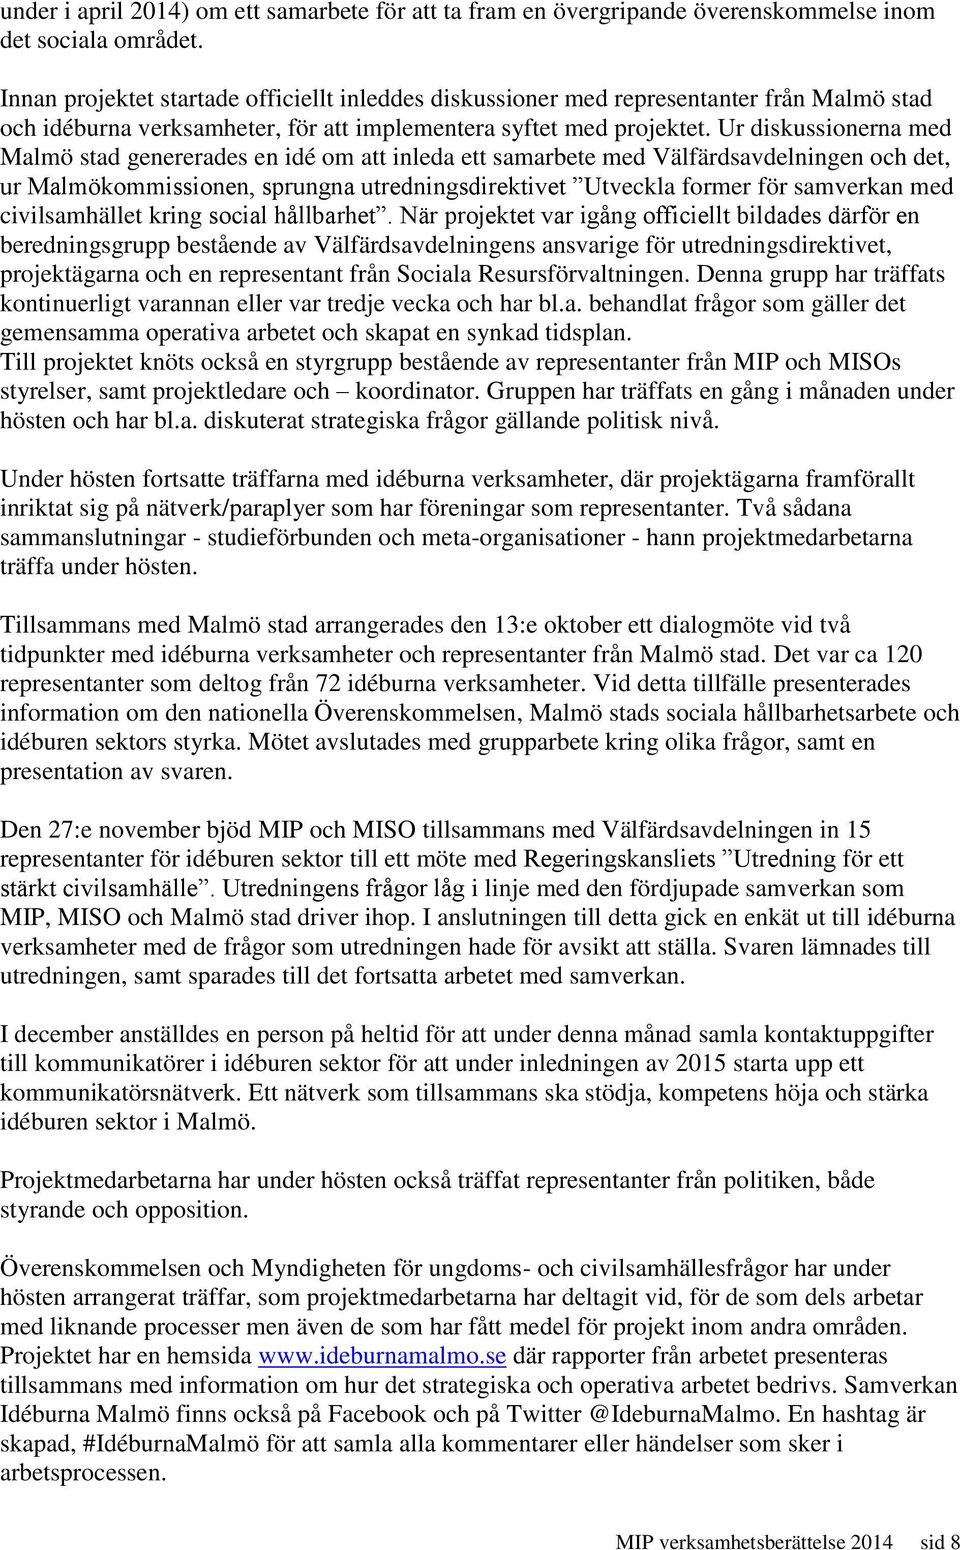 Ur diskussionerna med Malmö stad genererades en idé om att inleda ett samarbete med Välfärdsavdelningen och det, ur Malmökommissionen, sprungna utredningsdirektivet Utveckla former för samverkan med